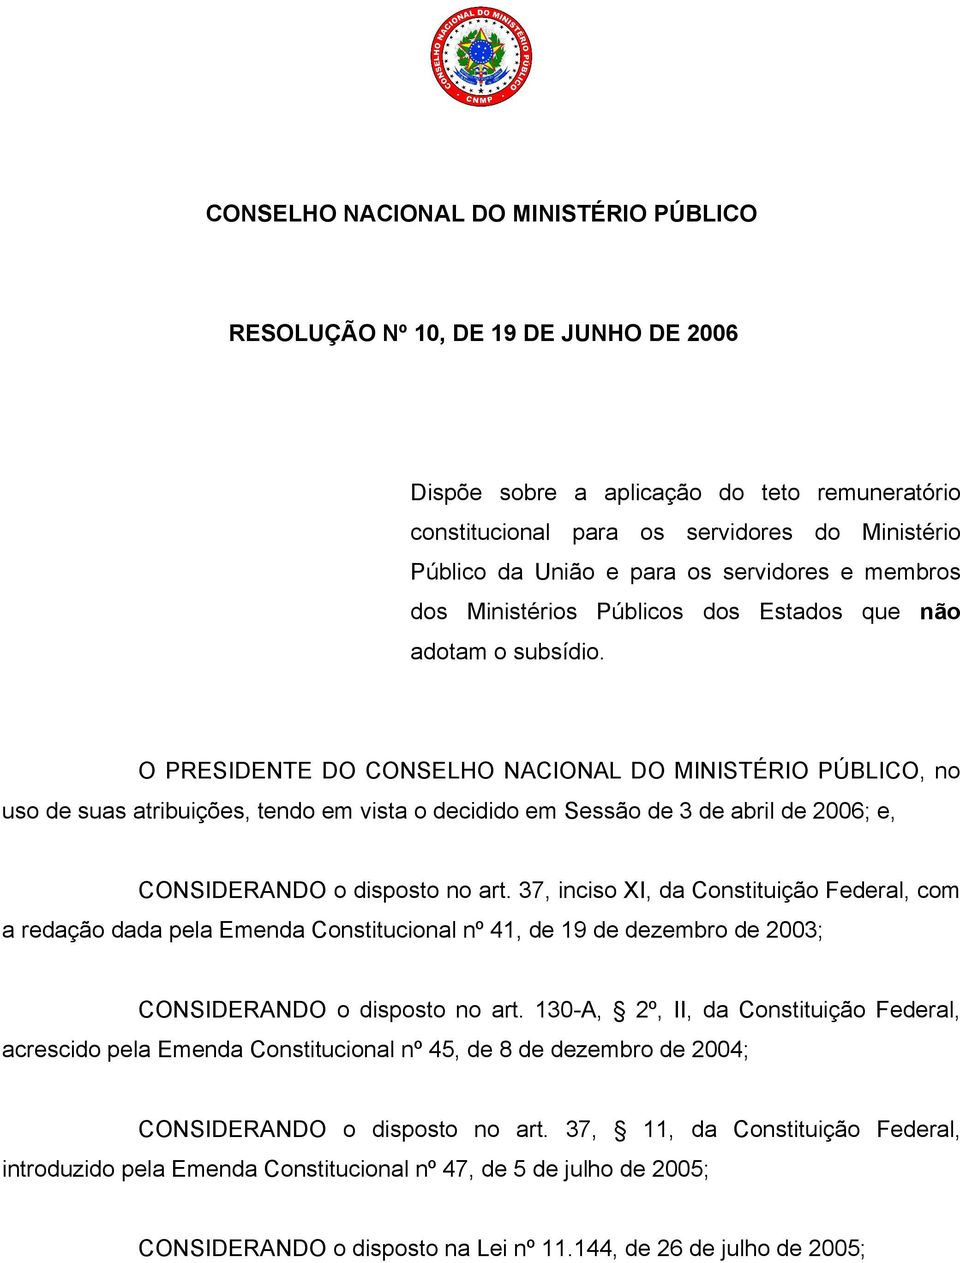 O PRESIDENTE DO CONSELHO NACIONAL DO MINISTÉRIO PÚBLICO, no uso de suas atribuições, tendo em vista o decidido em Sessão de 3 de abril de 2006; e, CONSIDERANDO o disposto no art.